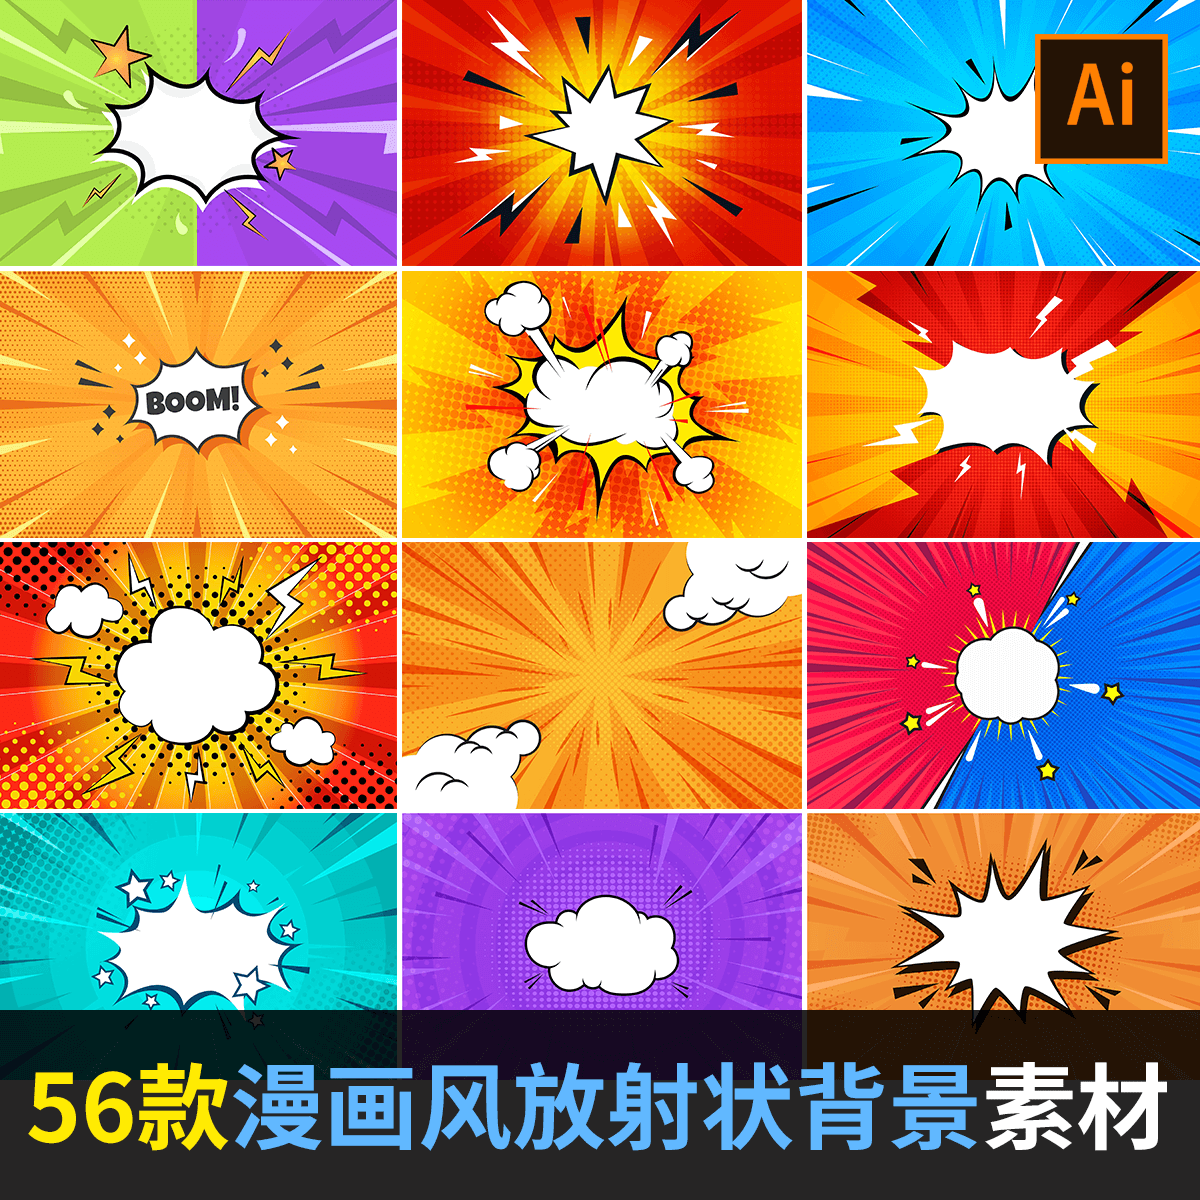 漫画插画风平面设计抽象放射状海报背景图案AI矢量设计素材AT2101